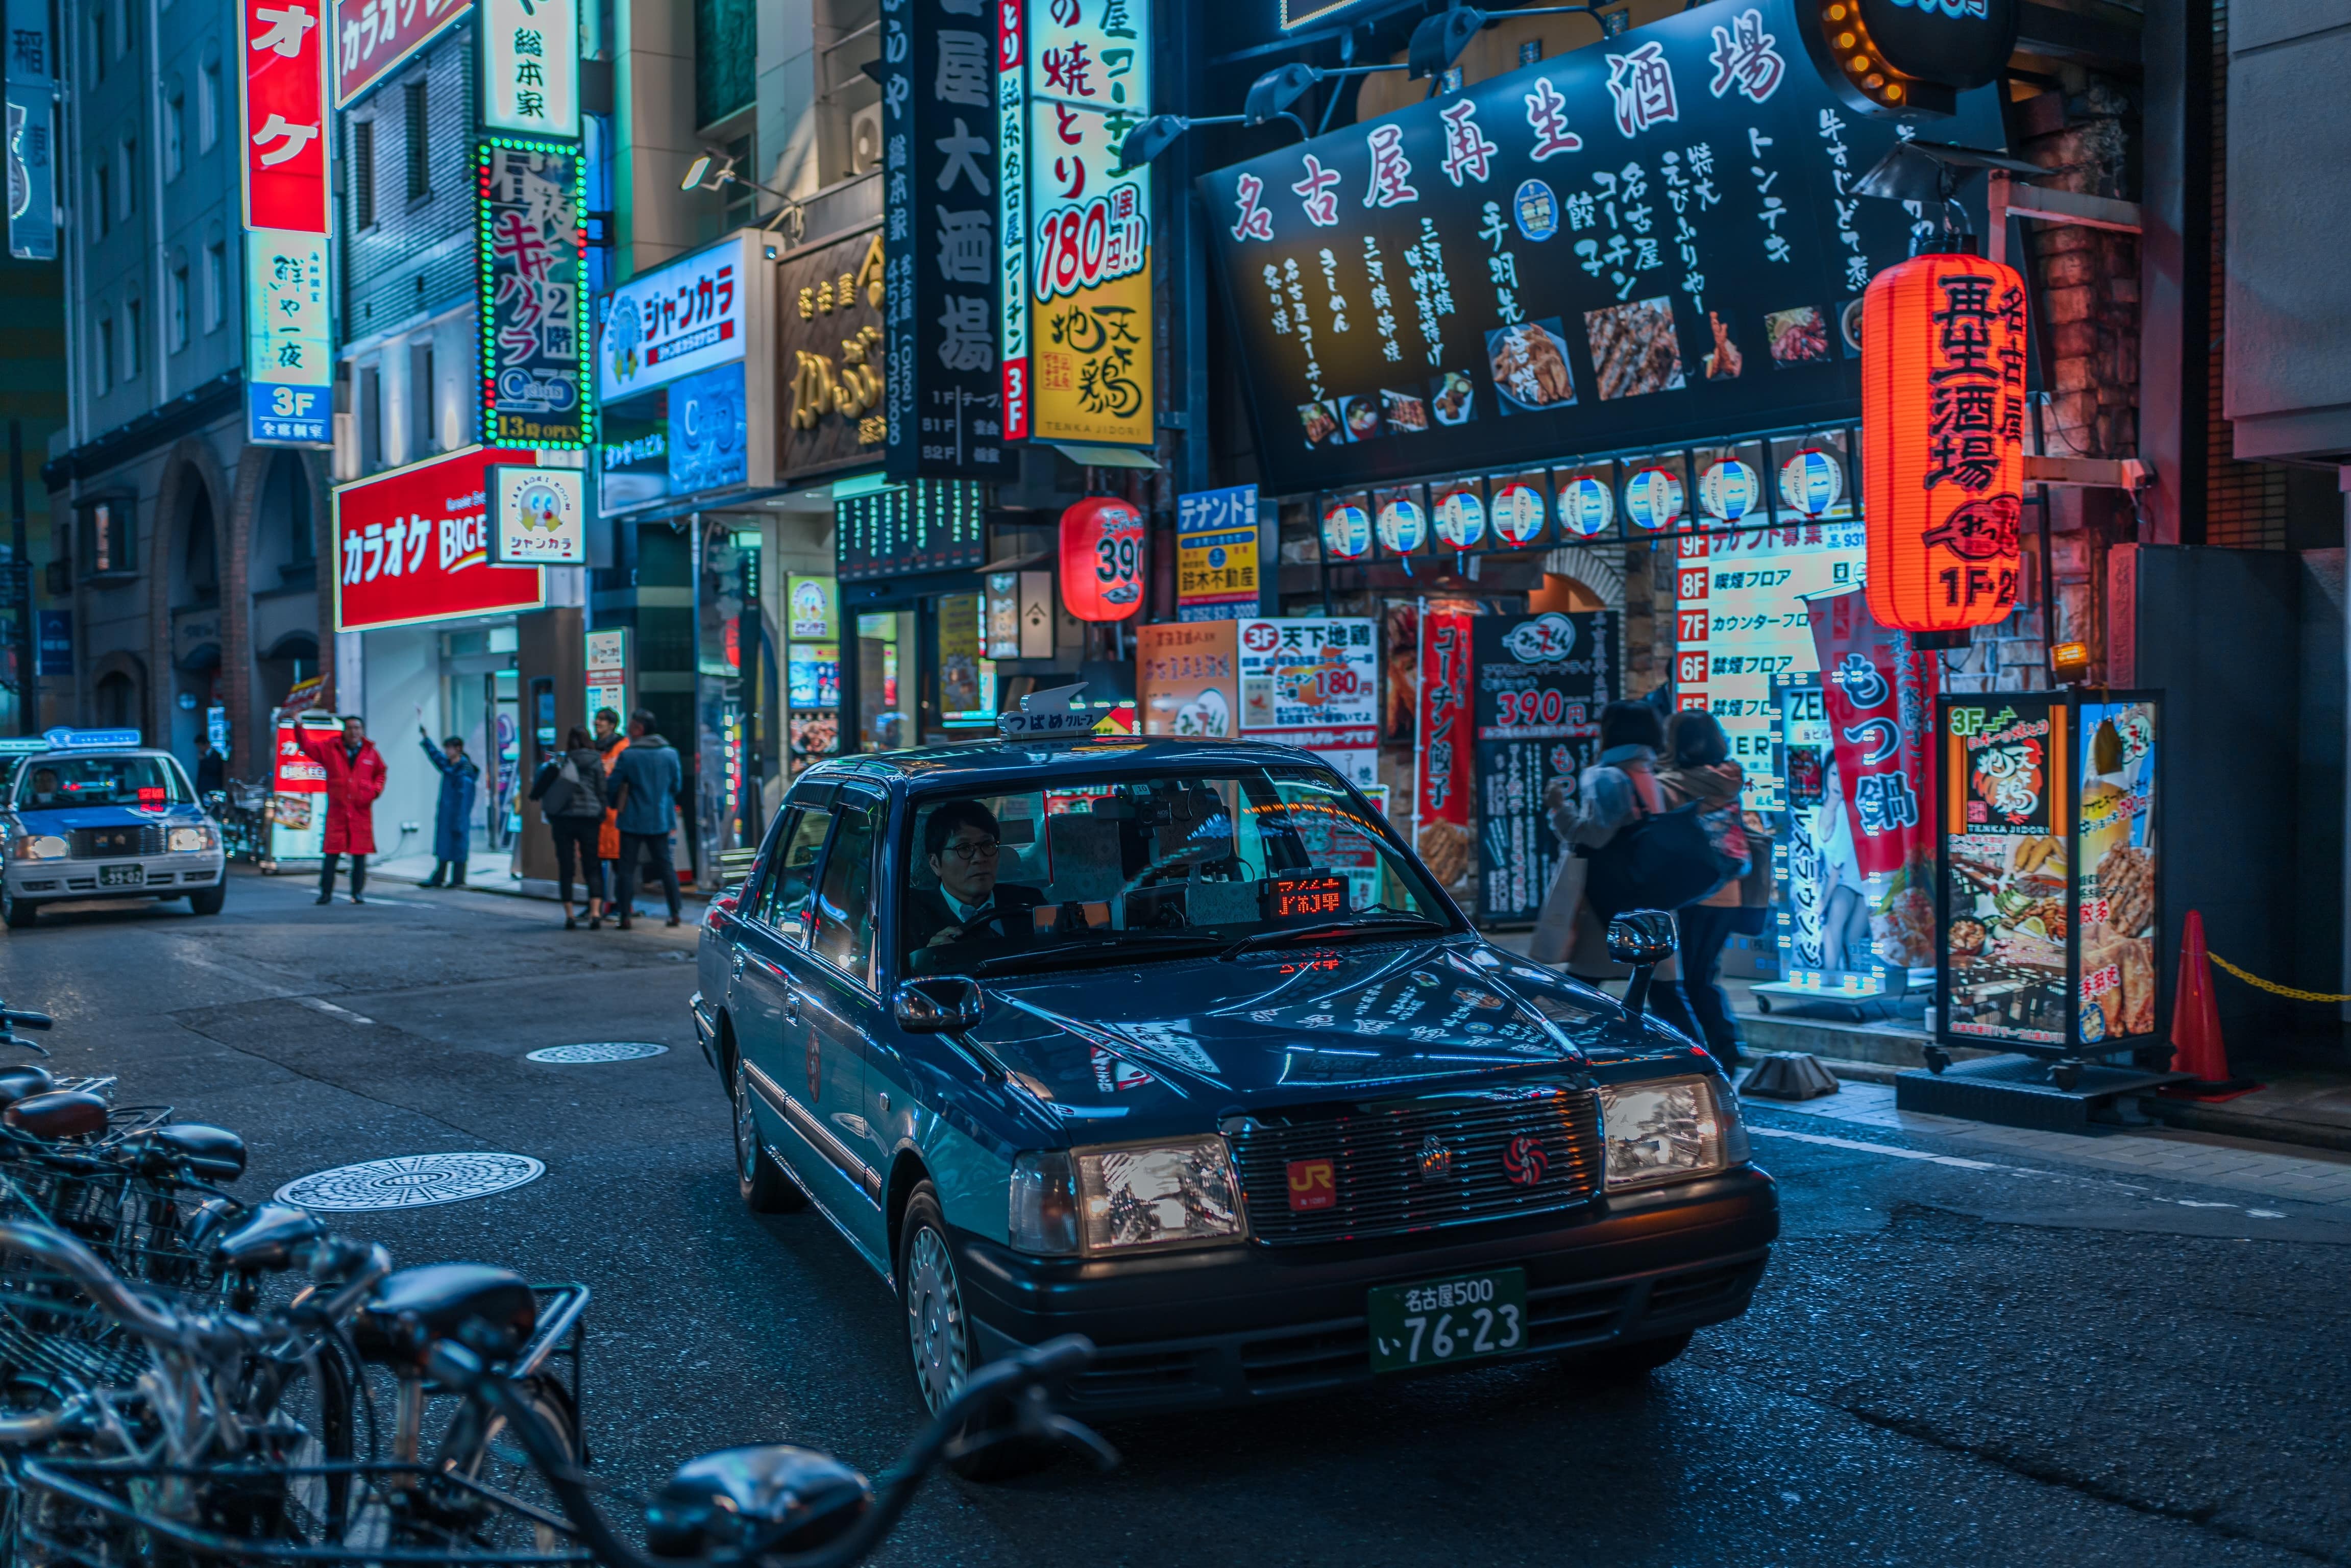 A taxi makes its way through Nagoya Japan